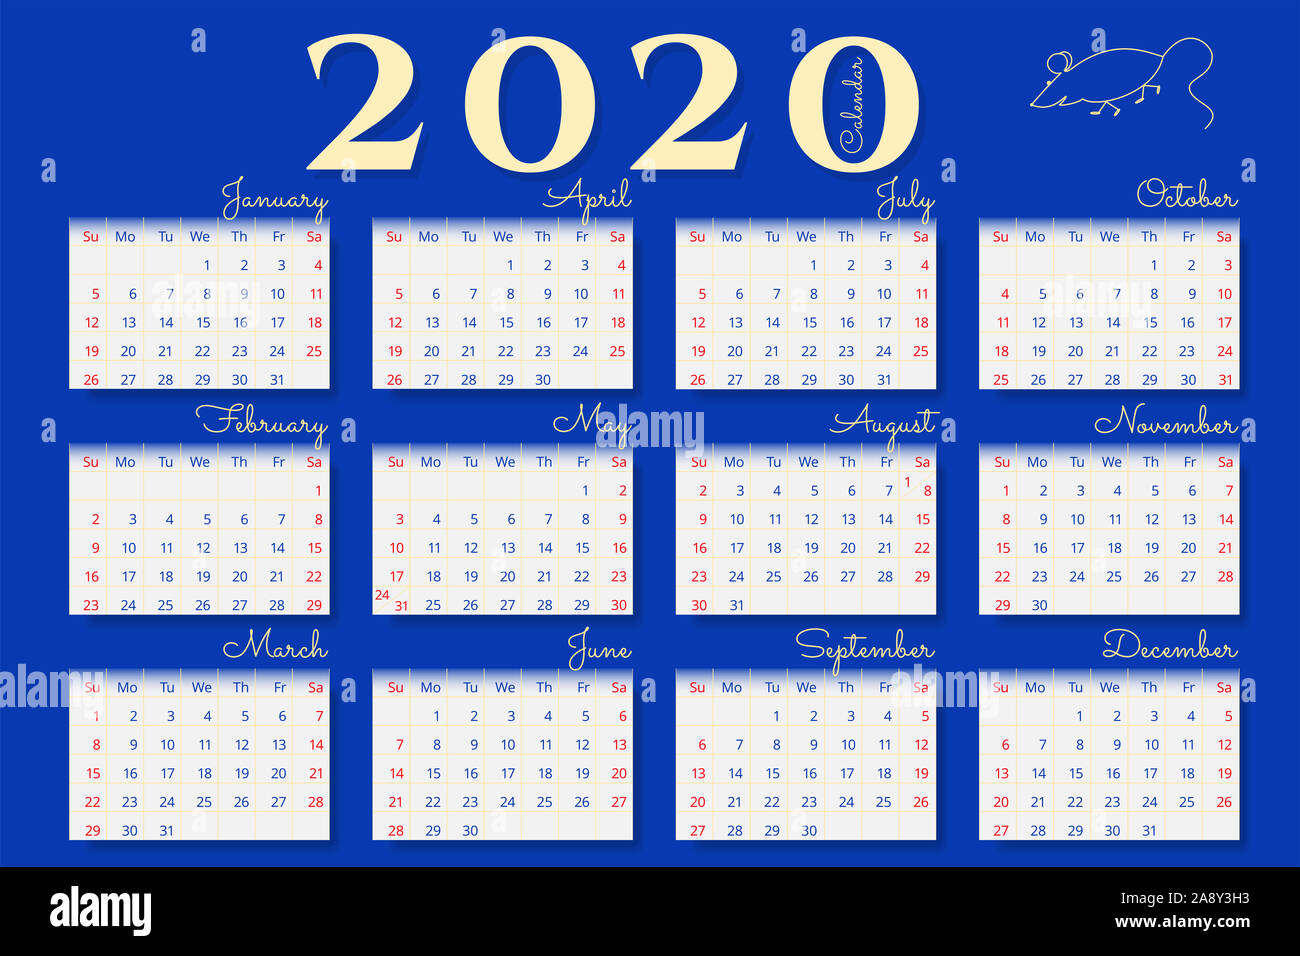 Calendrier mural de l'année 2020 sur fond bleu. Samedi et dimanche est en surbrillance rouge. Poster horizontal Banque D'Images